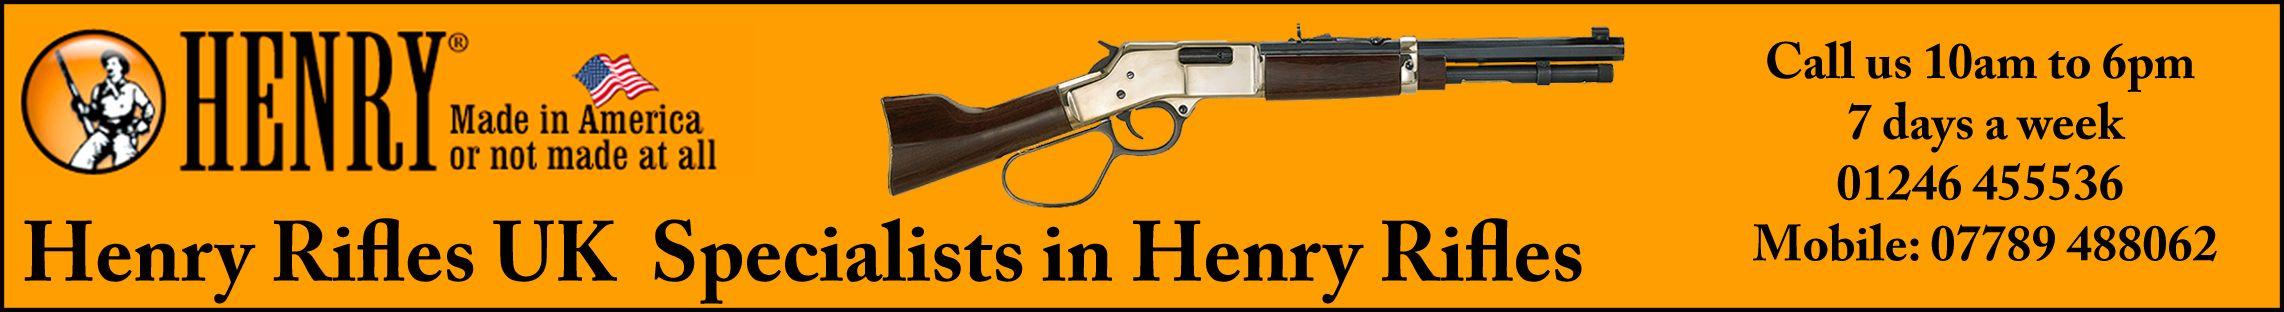 Henry Arms Logo - Henry Rifles UK - Henry Rifles Premier Dealer